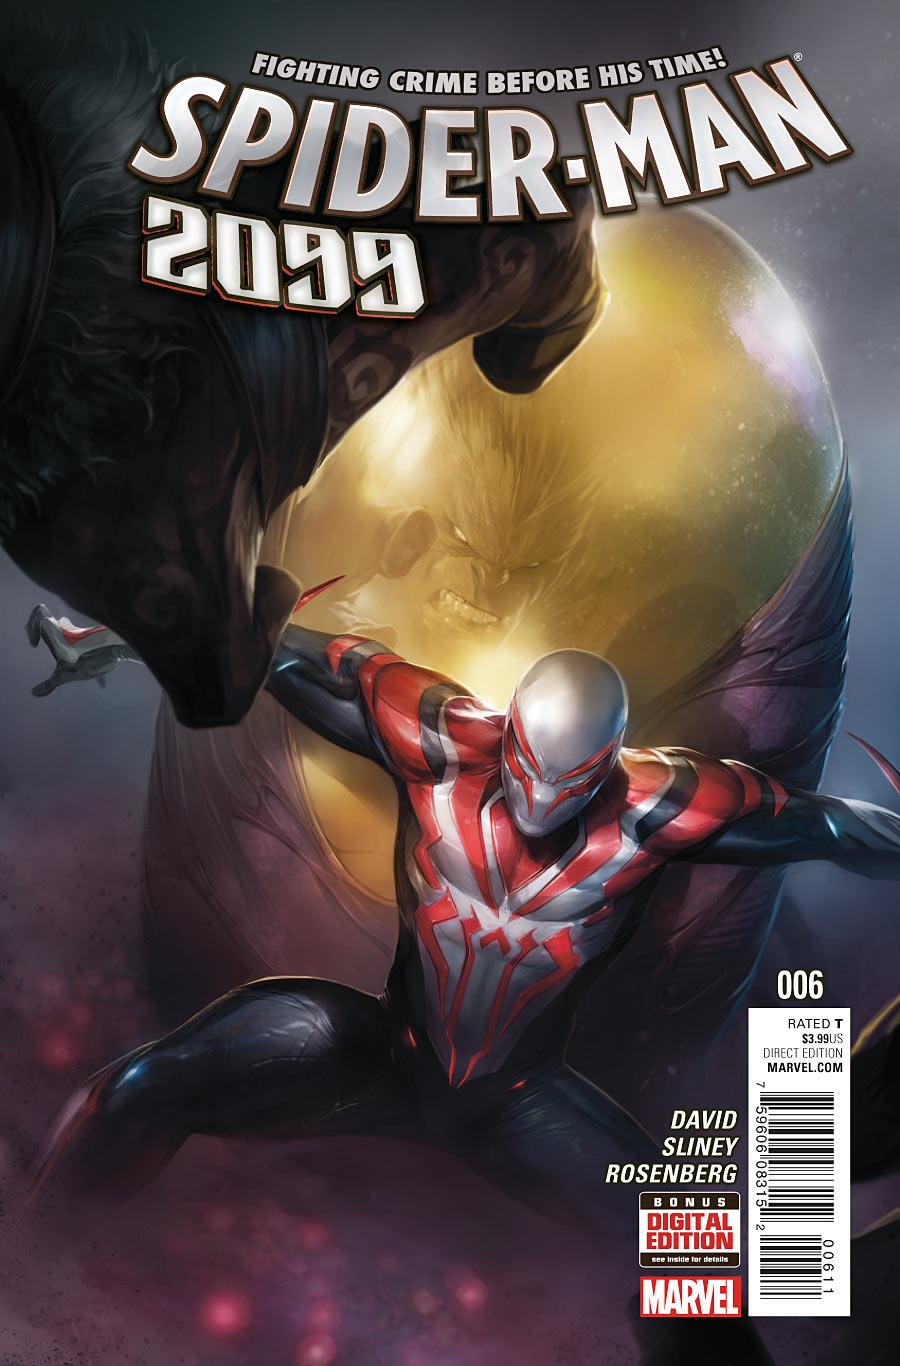 Spider-Man 2099 Vol. 3 #6